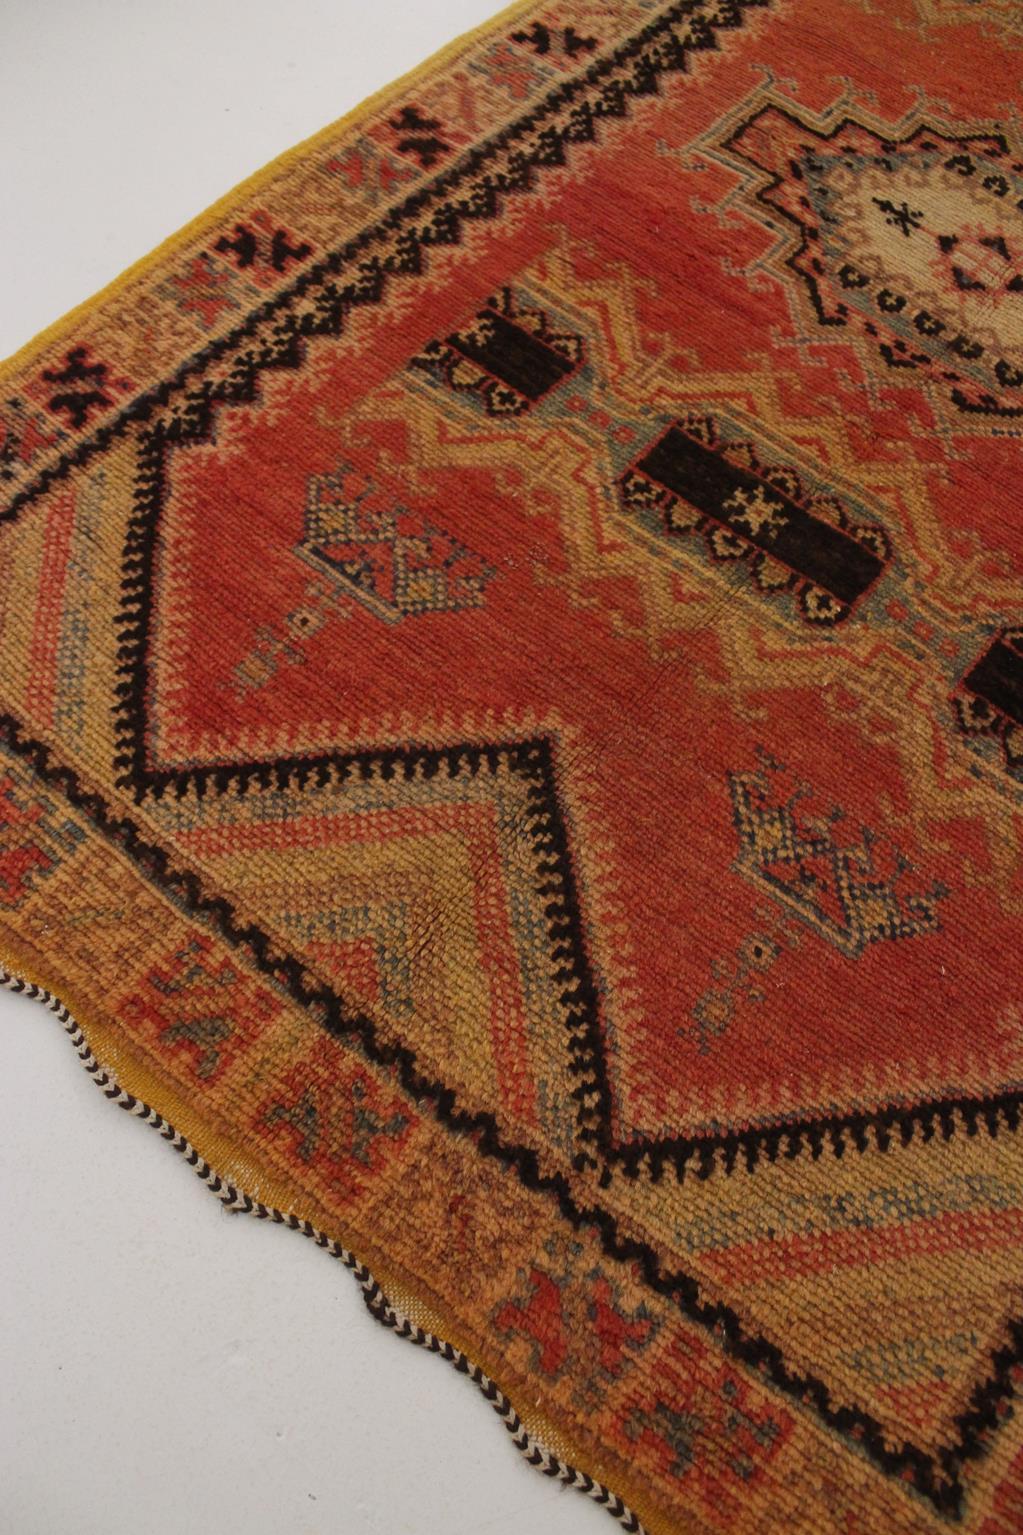 Vintage Moroccan Taznakht rug - Blood orange/black - 3.2x5.8feet / 100x178cm For Sale 2